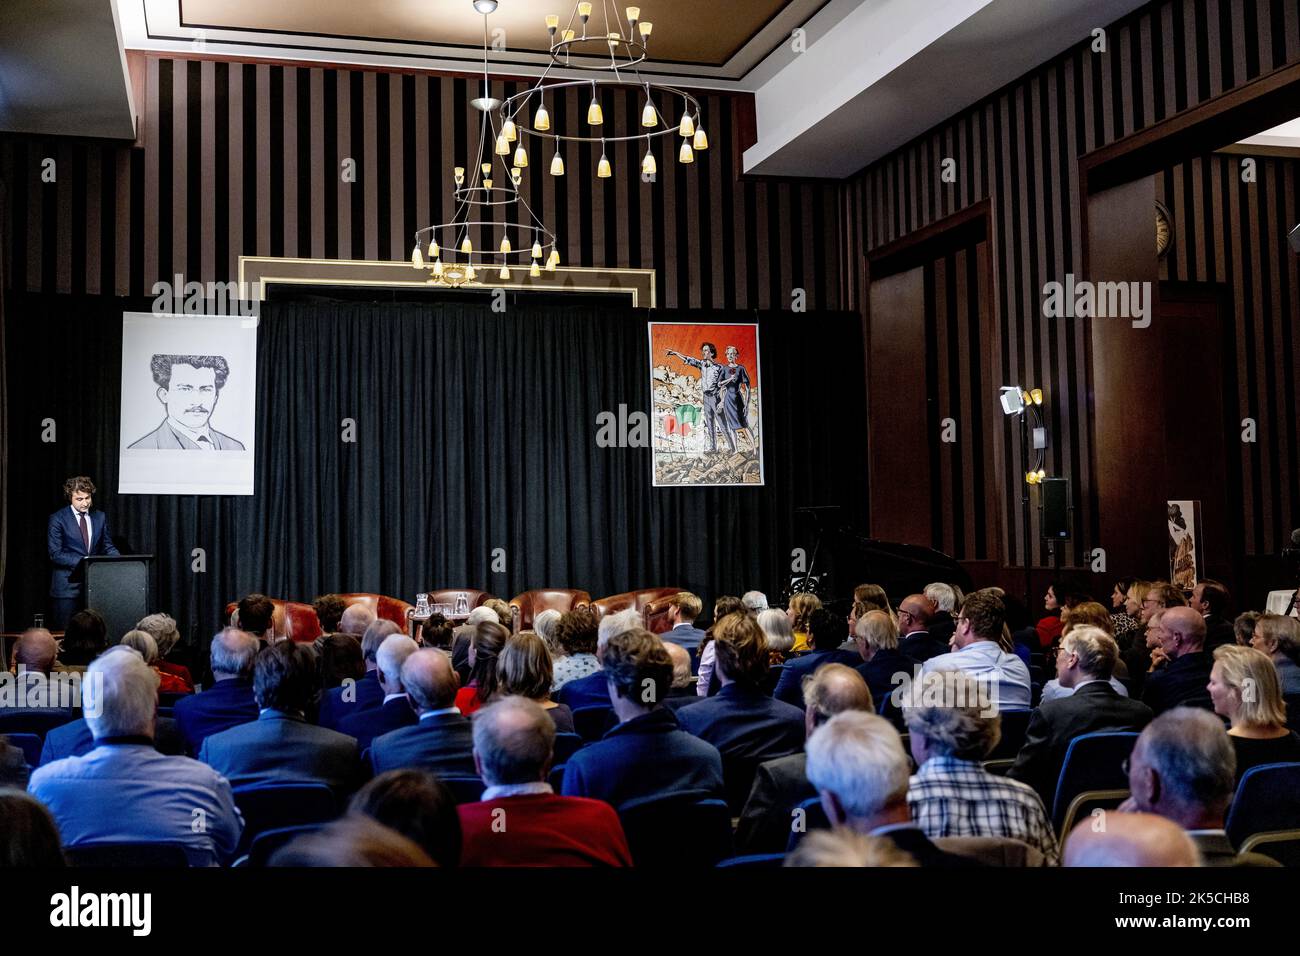 2022-10-07 18:23:15 LA HAYA - Jesse Klaver durante la conferencia de Kerkdijk bajo el título: Un nuevo comienzo: La promesa de la cooperación de izquierda. Durante la conferencia, el líder de GroenLinks expone su visión para el futuro de los Países Bajos. ANP ROBIN UTRECHT netherlands Out - belgium Out Foto de stock